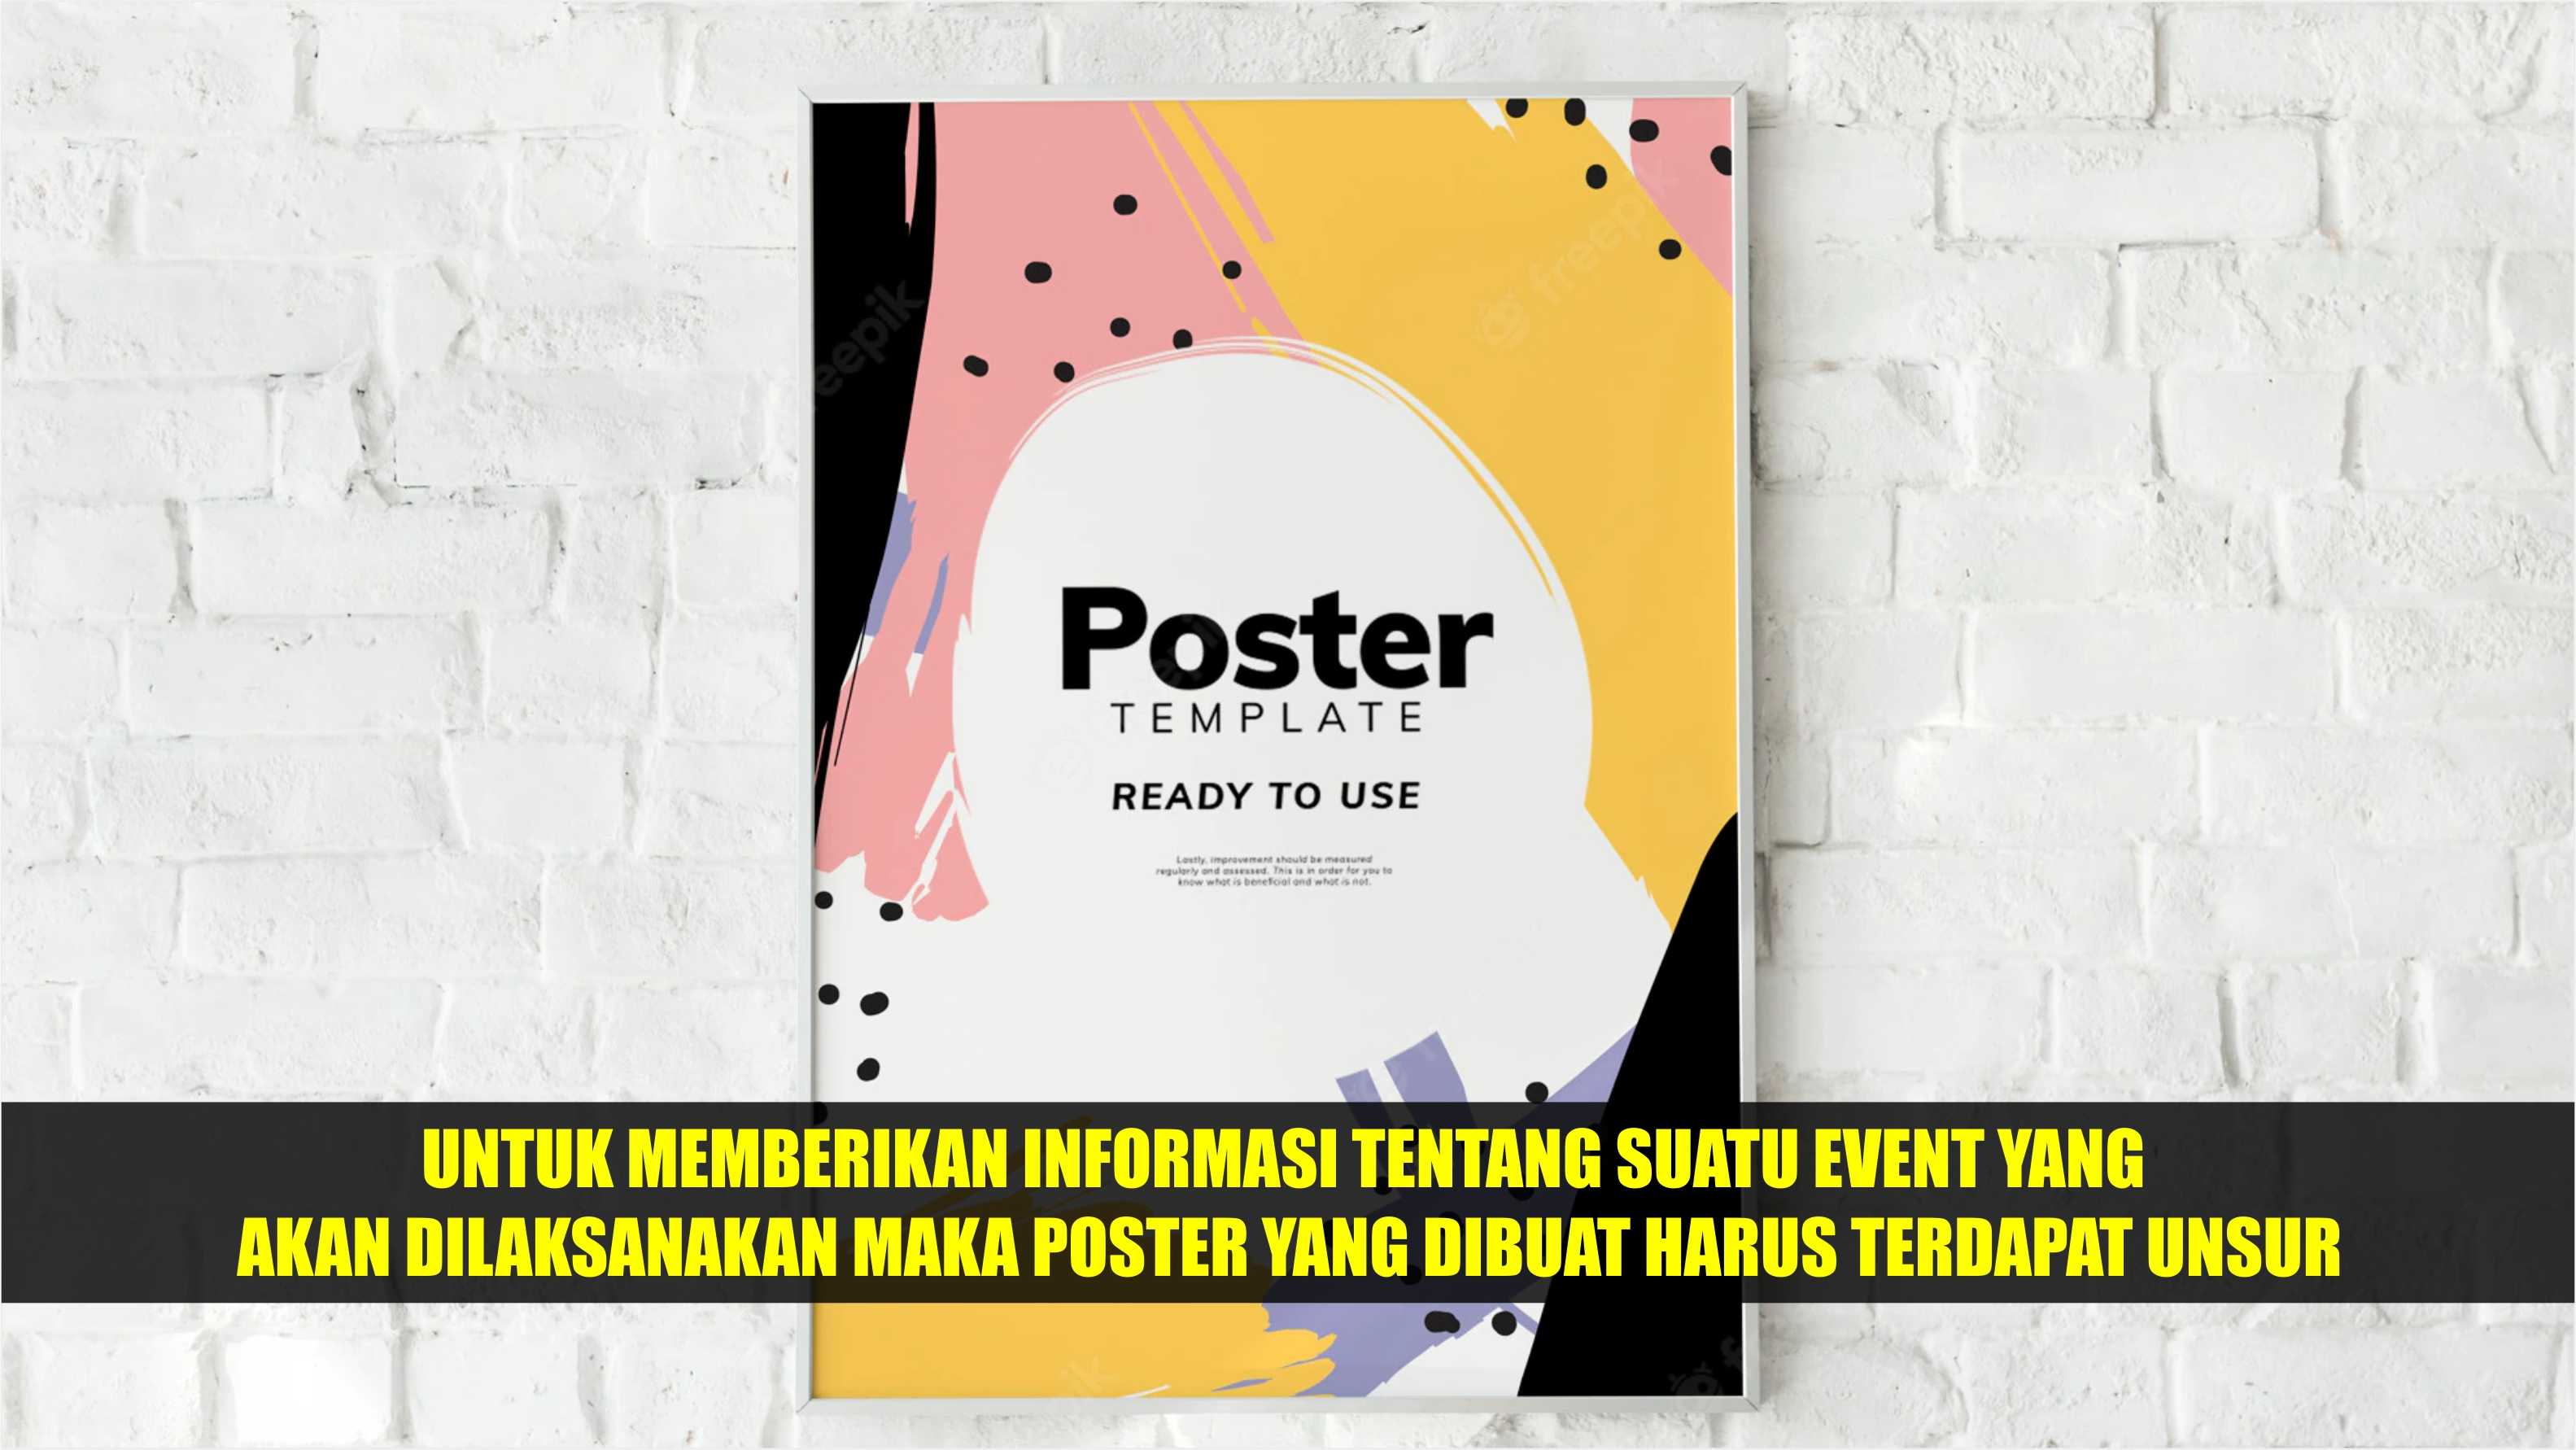 Untuk Memberikan Informasi Tentang Suatu Event Yang Akan Dilaksanakan Maka Poster Yang Dibuat Harus Terdapat Unsur